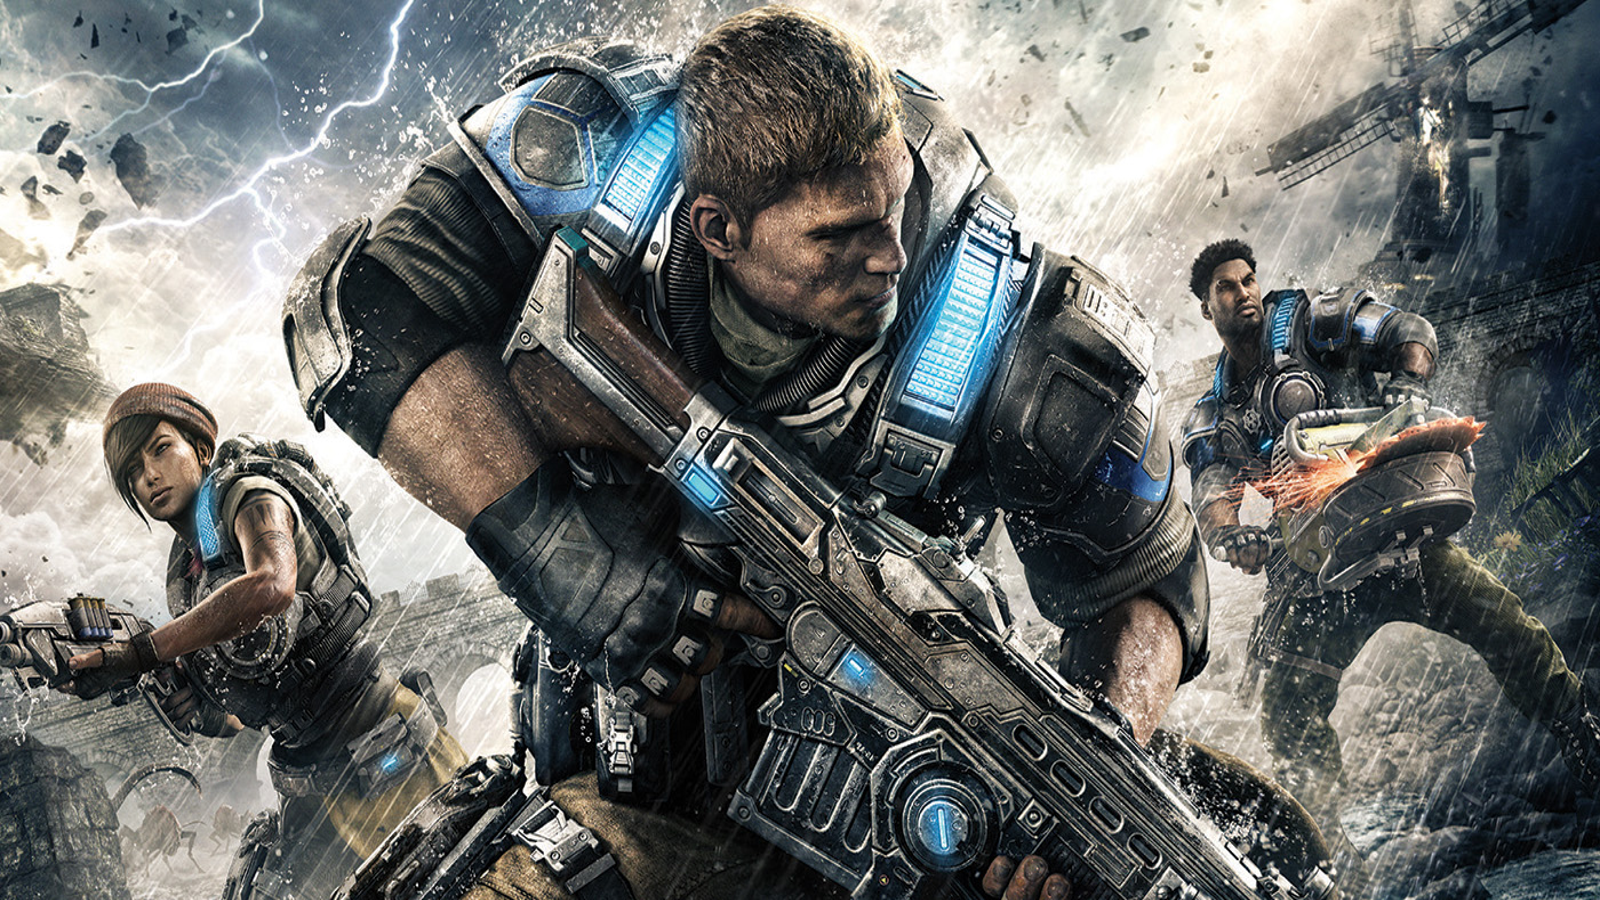 Gears of War 4's Horde 3.0 co-op mode features new emergent gameplay